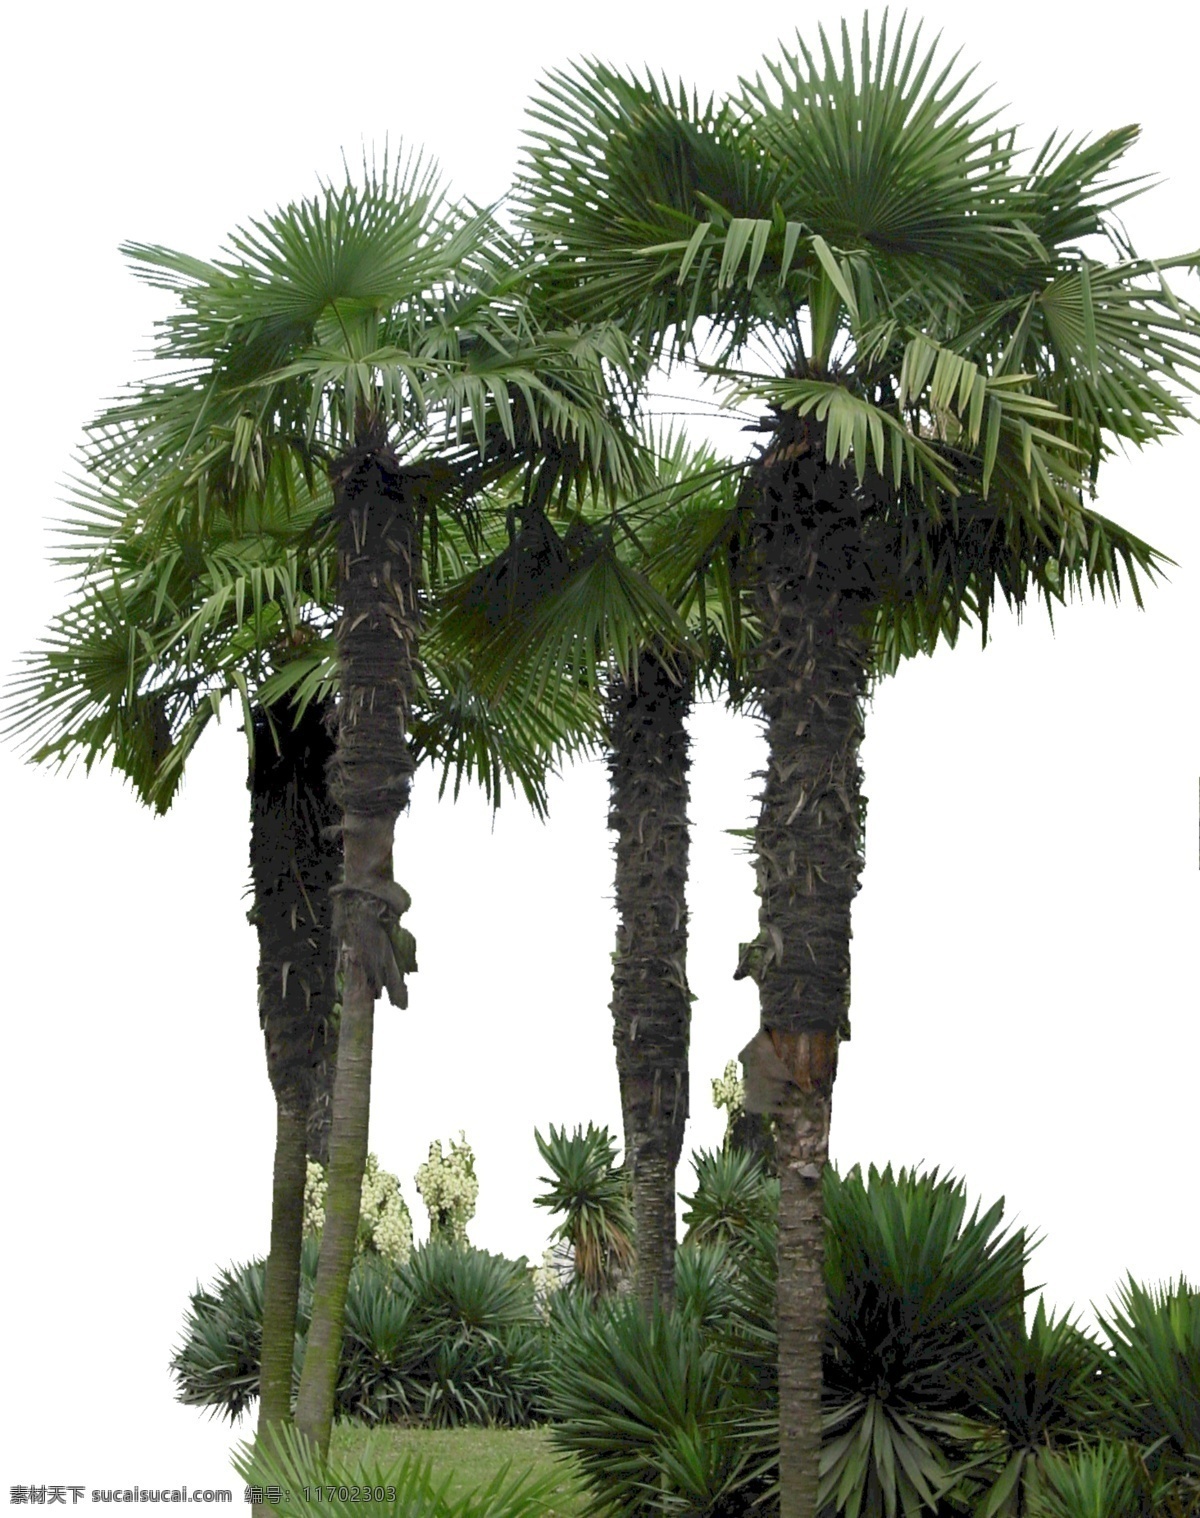 老人葵 蒲葵 葵树 大叶 棕榈 棕榈树 热带树 椰子树 葵扇树 行道树 公园绿化 城市绿化 单体 分层